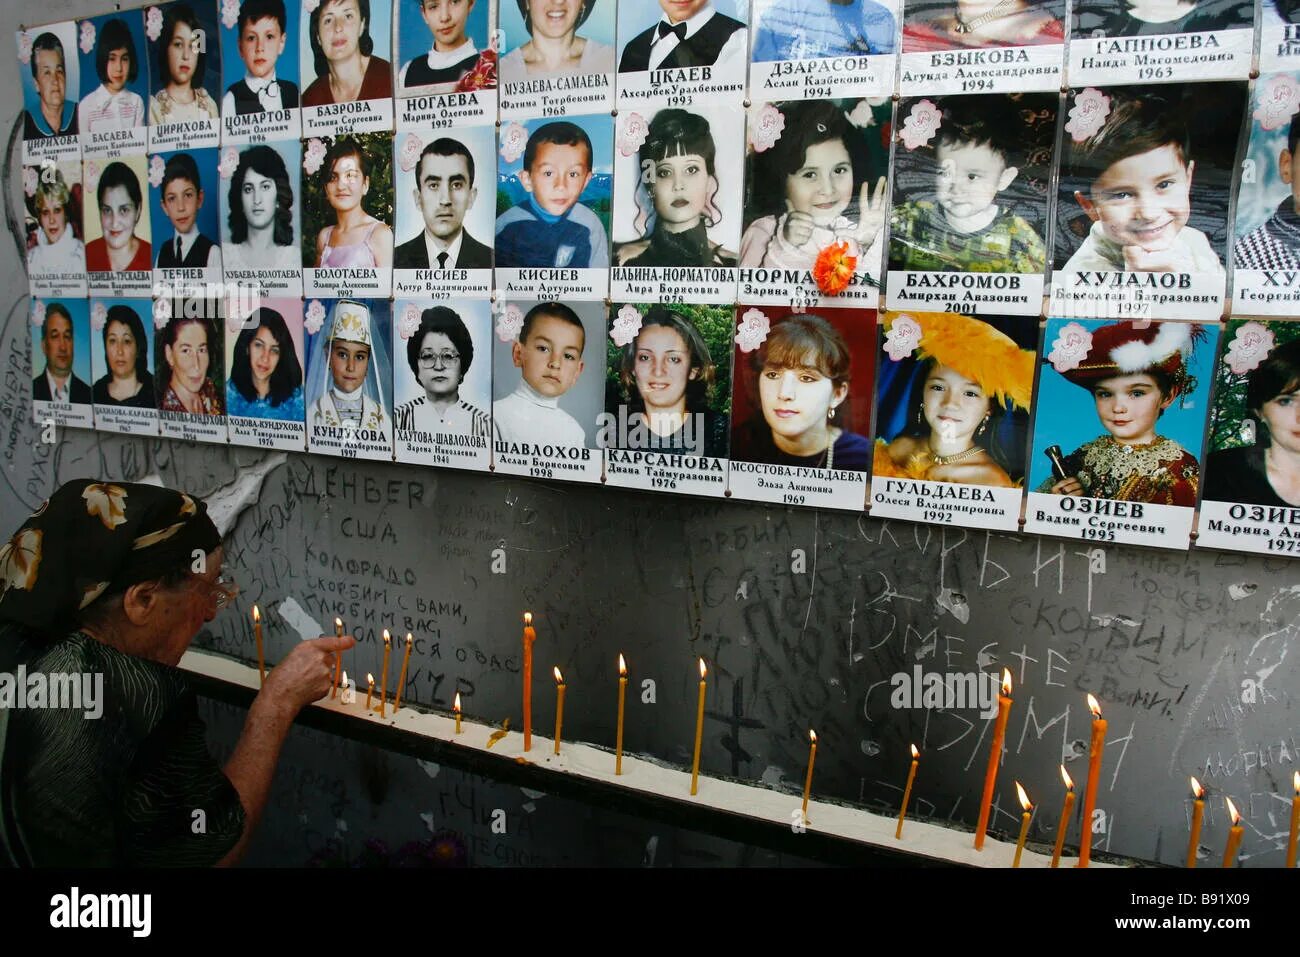 Школа беслан теракт сколько погибло детей. Дети Беслана 1 сентября 2004. Беслан 2004 год школа теракт.